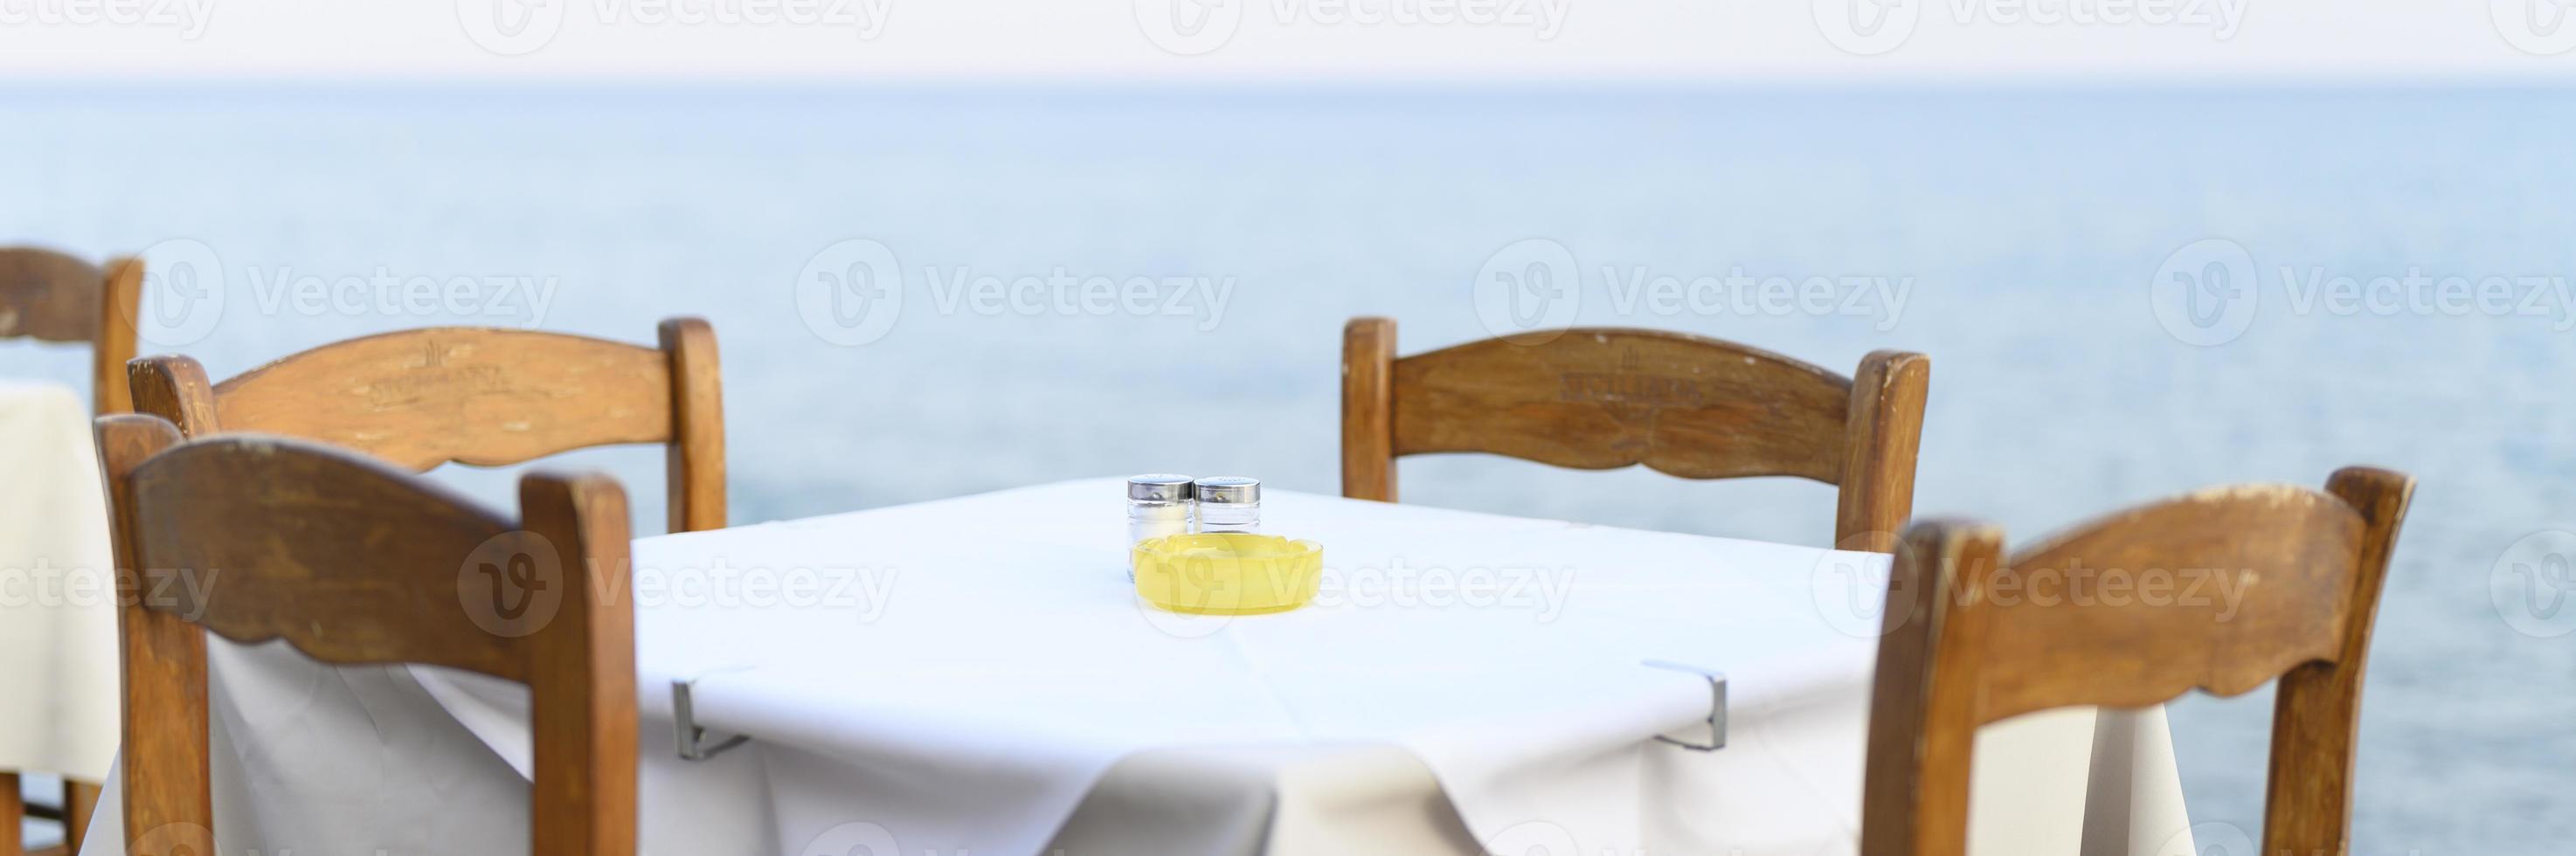 Tables de café sur la mer, mise au point sélective photo